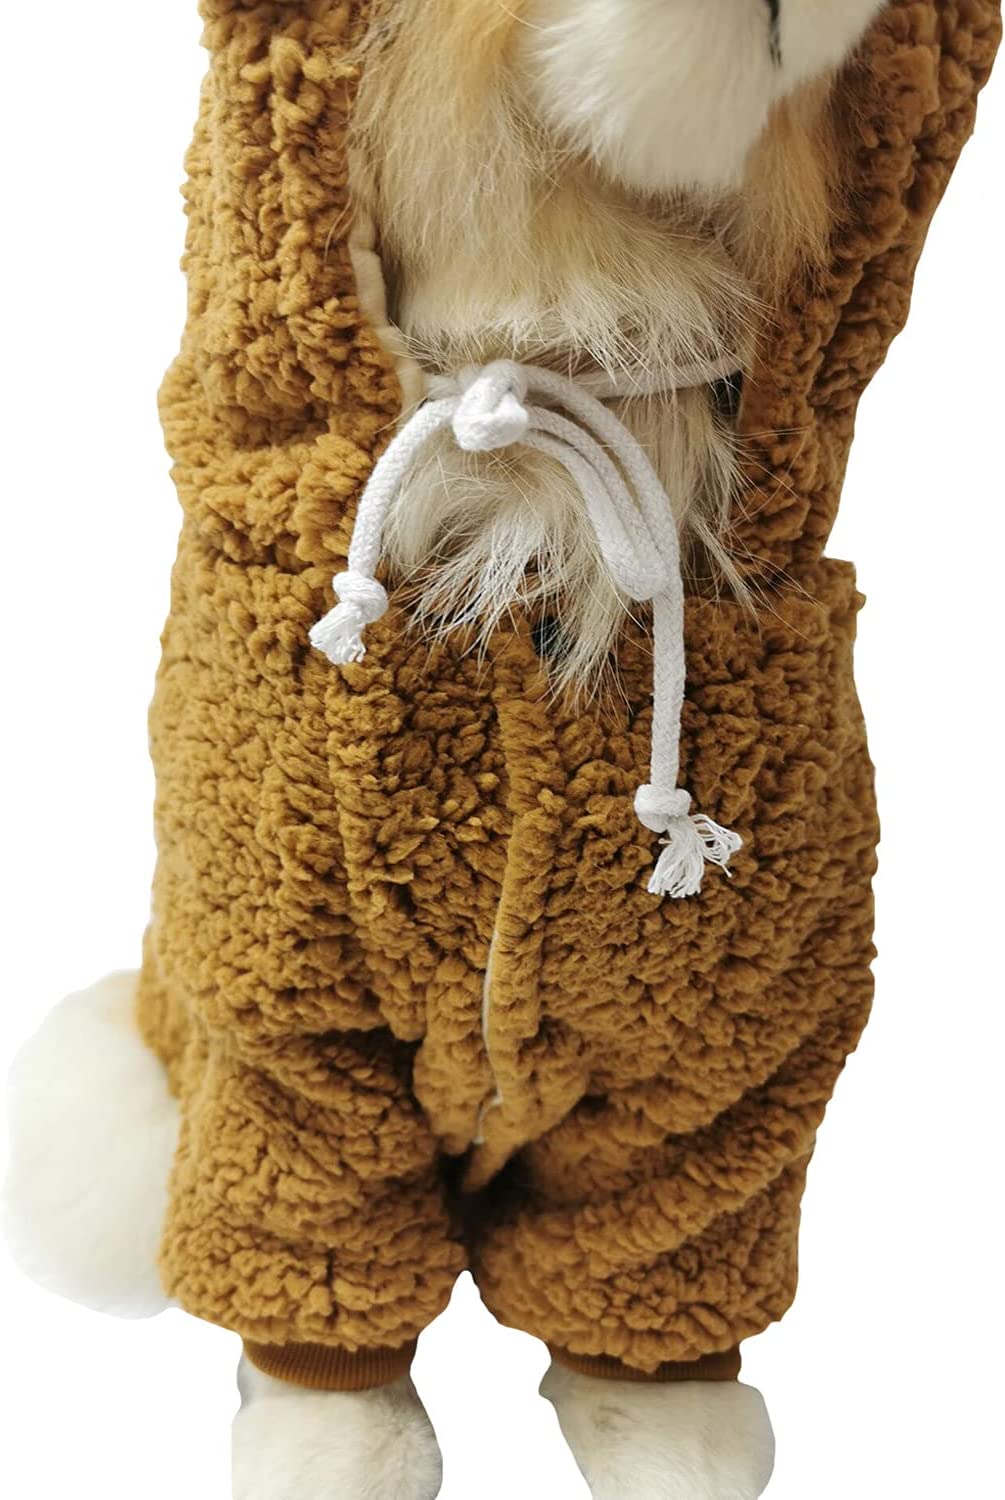     این لباس سگ کلاهدار دایناسور بامزه، حیوان خانگی شما را دوست داشتنی تر می کند و به روز خاص سرگرم کننده می افزاید.